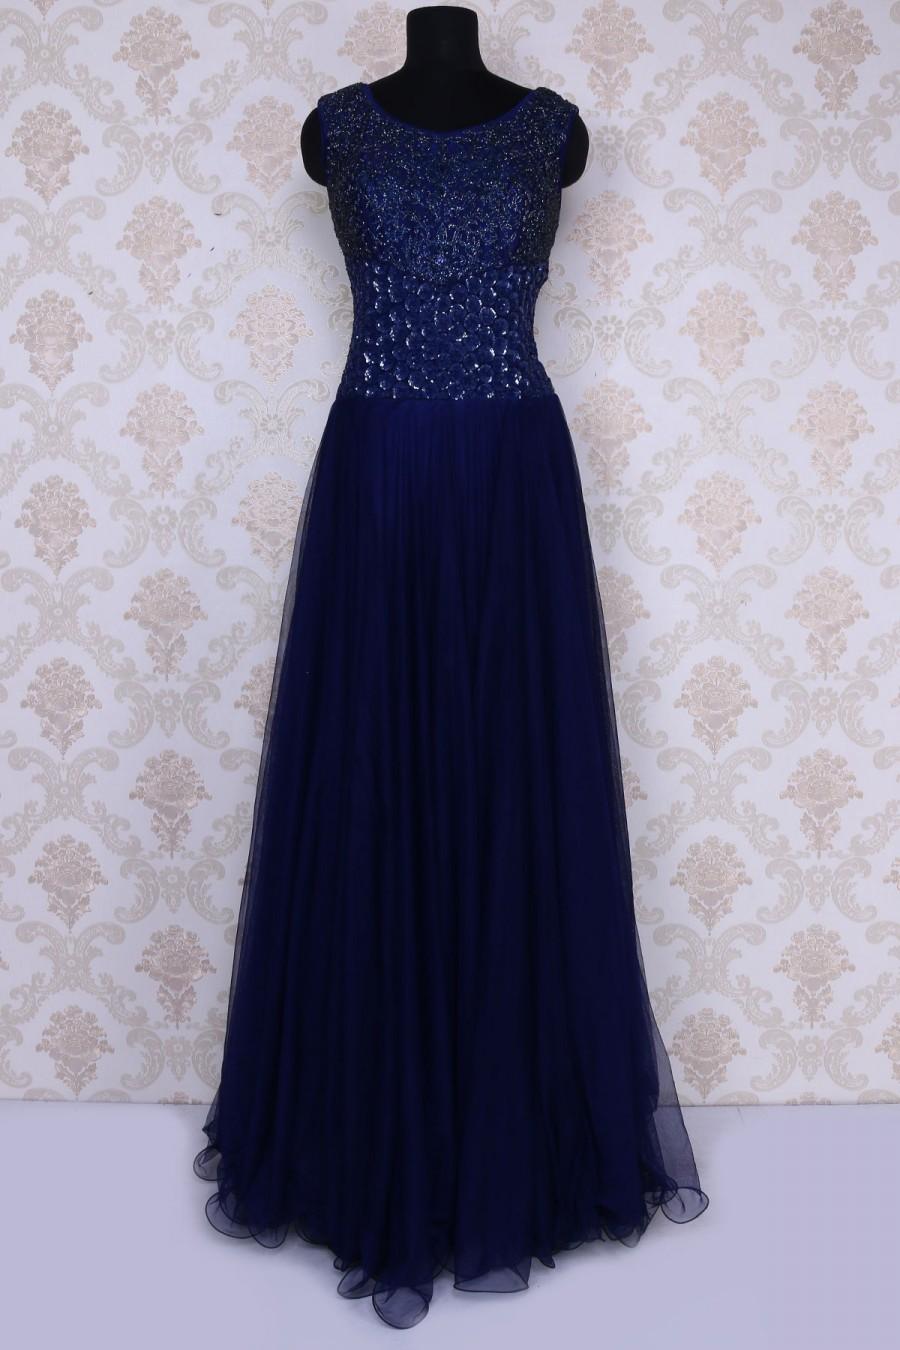 زفاف - Navy blue amazing sequins worked floor length net gown